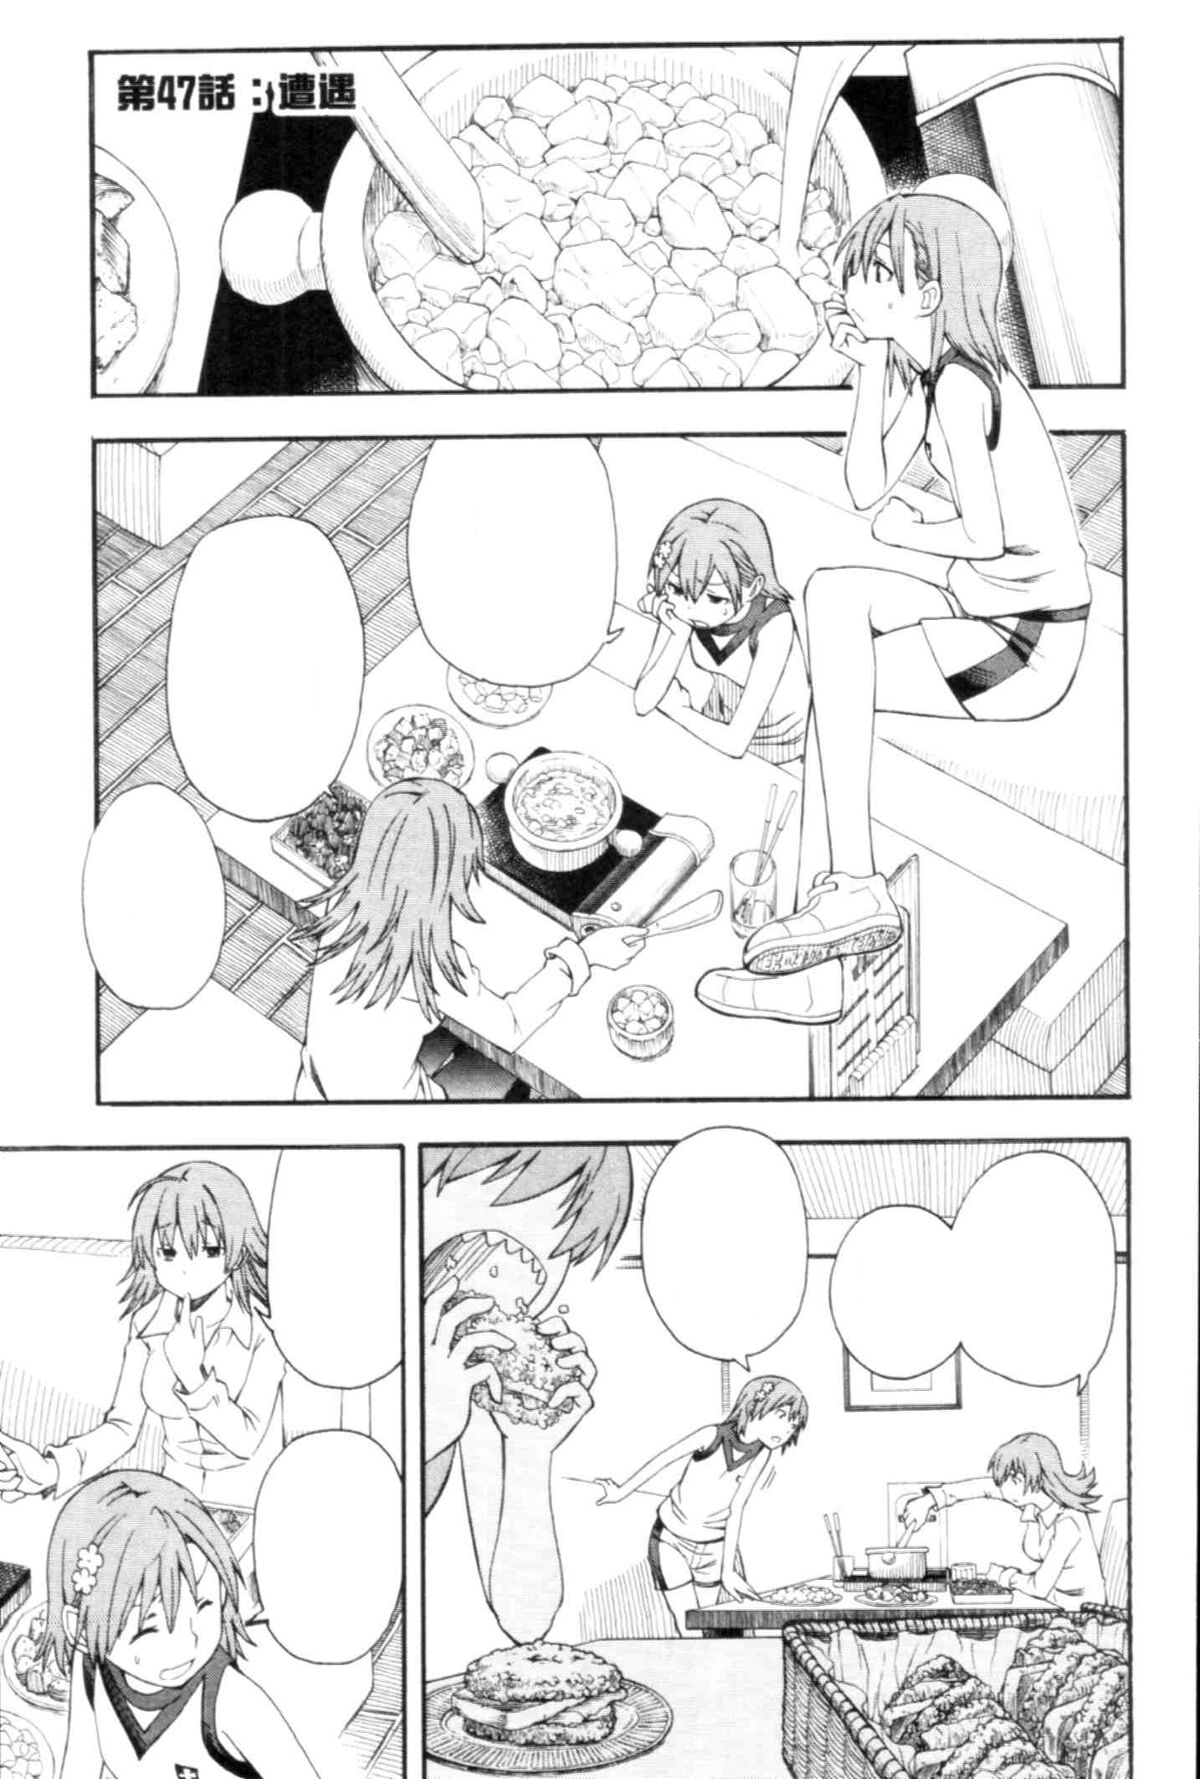 Toaru Kagaku no Railgun Manga Chapter 047 | Toaru Majutsu no 